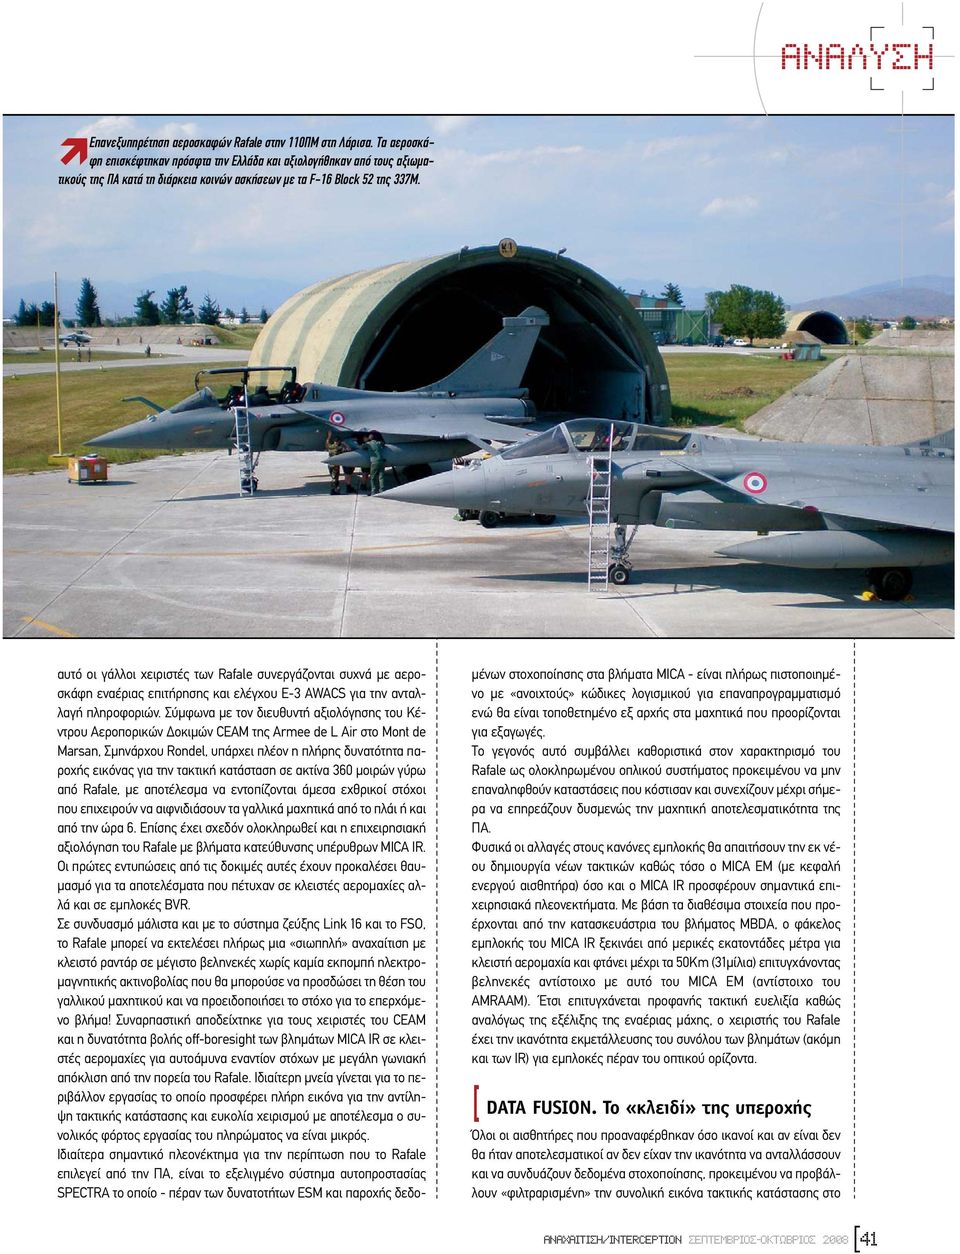 αυτό οι γάλλοι χειριστές των Rafale συνεργάζονται συχνά µε αεροσκάφη εναέριας επιτήρησης και ελέγχου E-3 AWACS για την ανταλλαγή πληροφοριών.